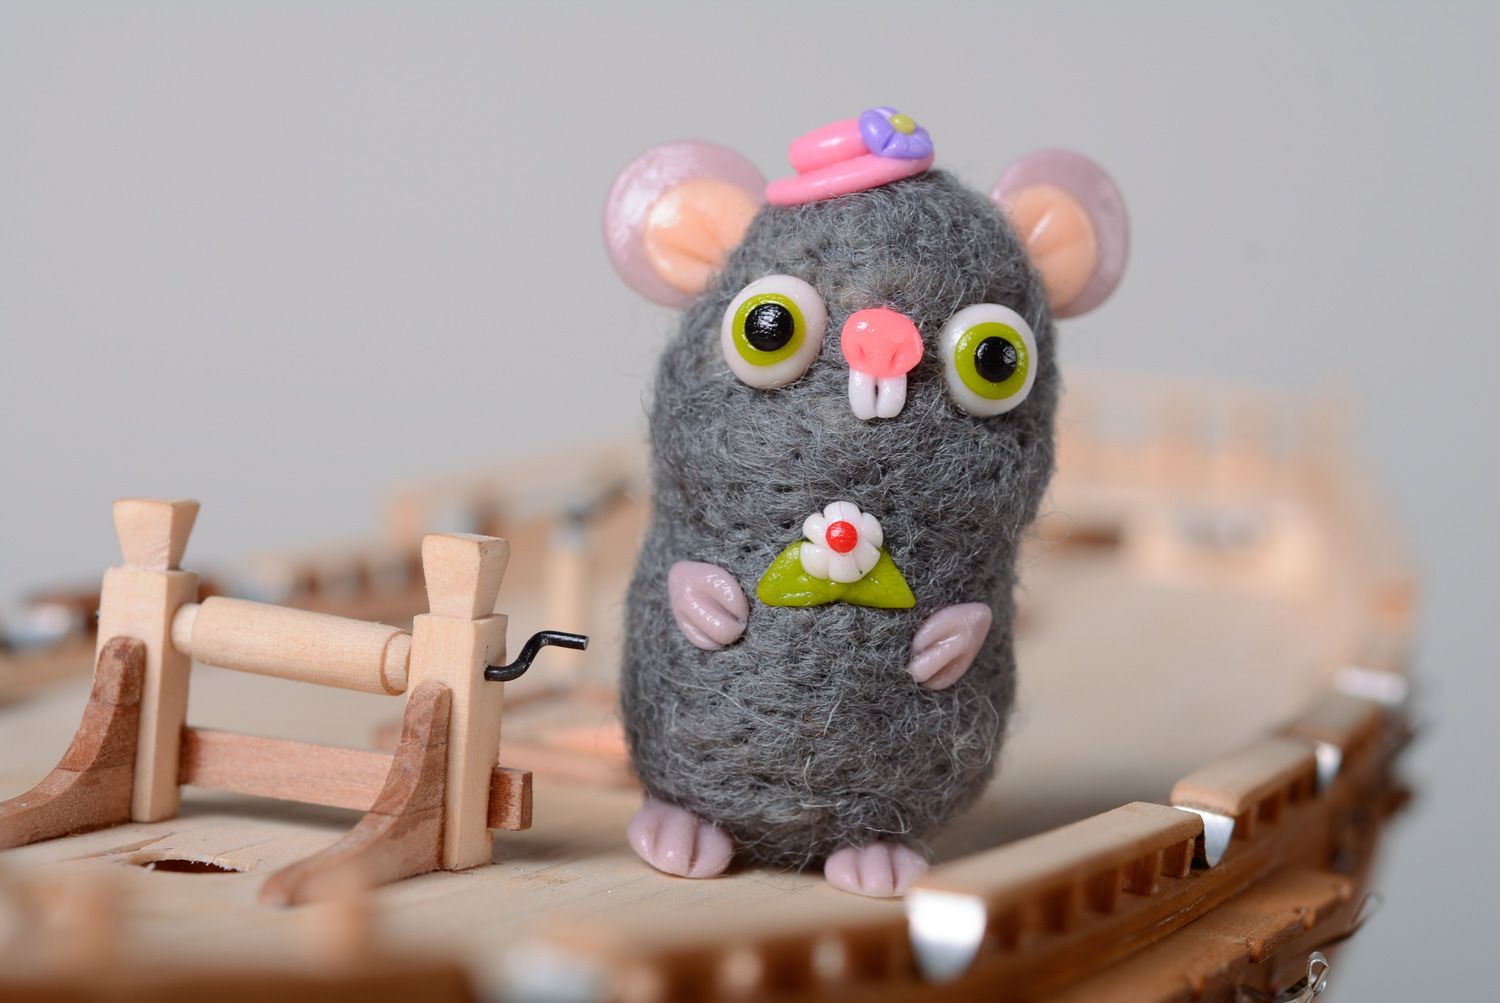 Миниатюрная игрушка мышка в технике валяния из шерсти фото 1